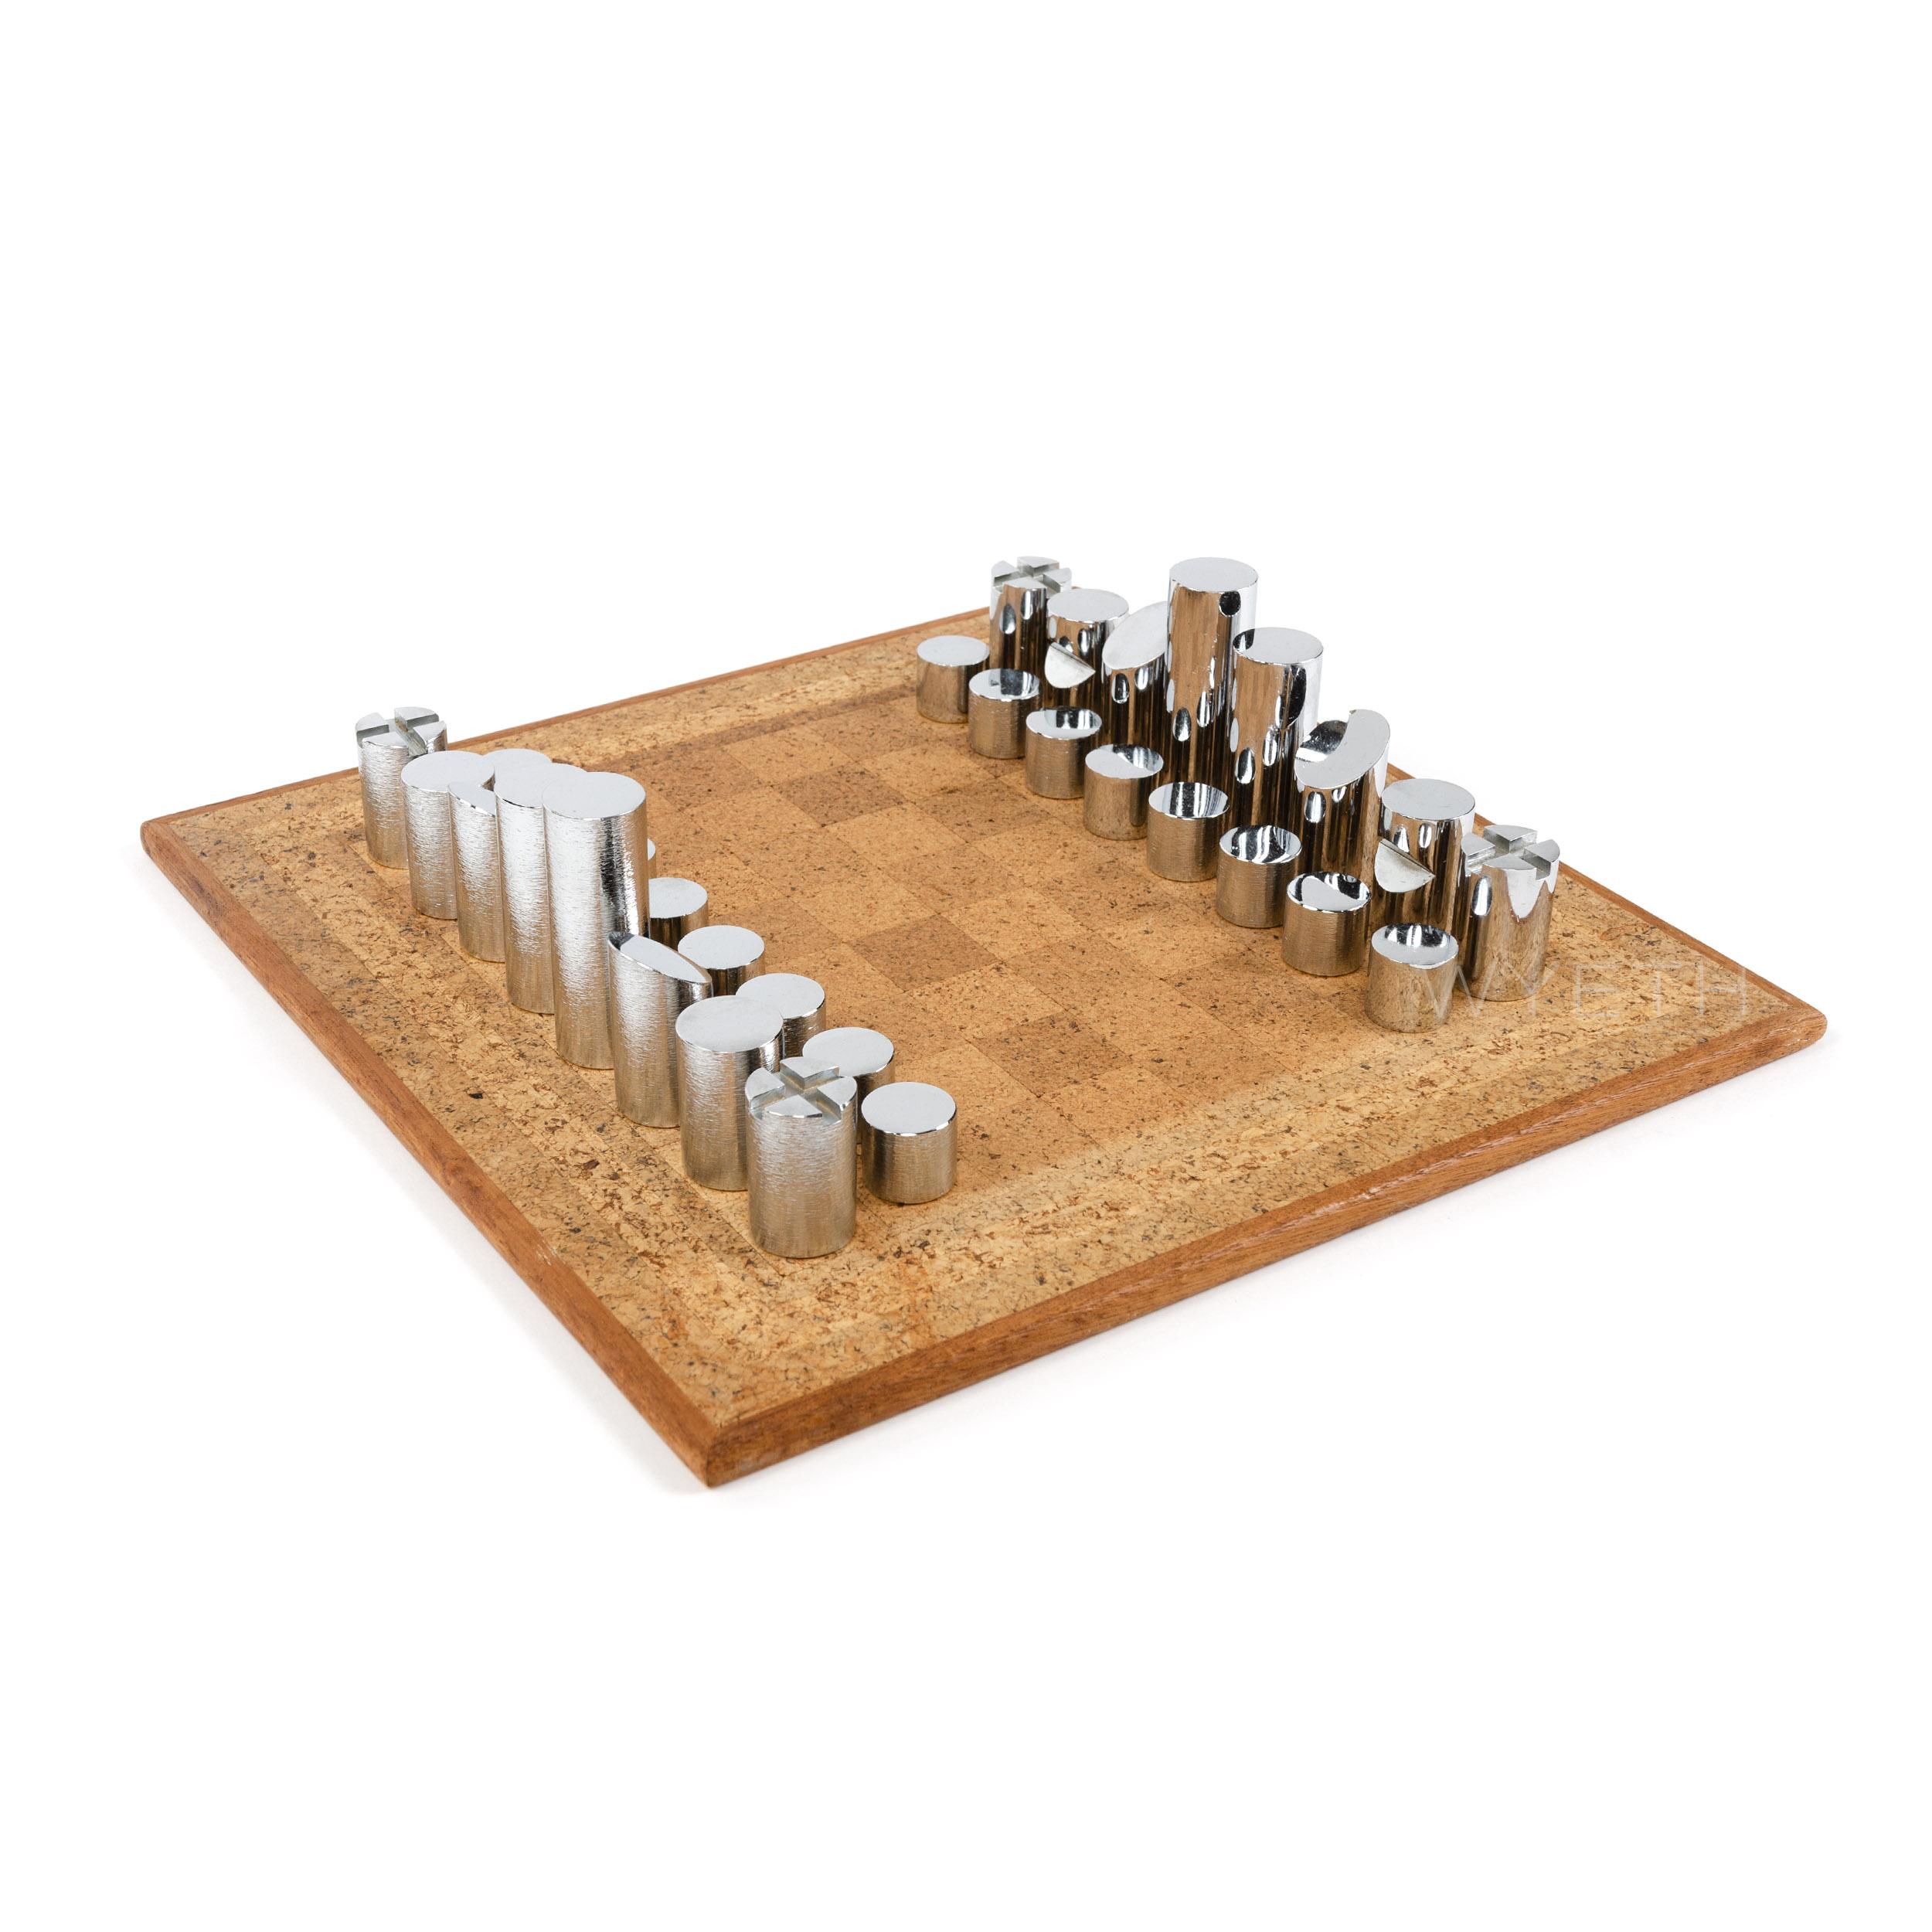 Ein modernistisches Schachspiel aus verchromtem Messing mit einem Vintage-Korkbrett. Die Stücke unterscheiden sich entweder durch eine glatte, polierte Oberfläche oder durch eine subtile Riffelstruktur.